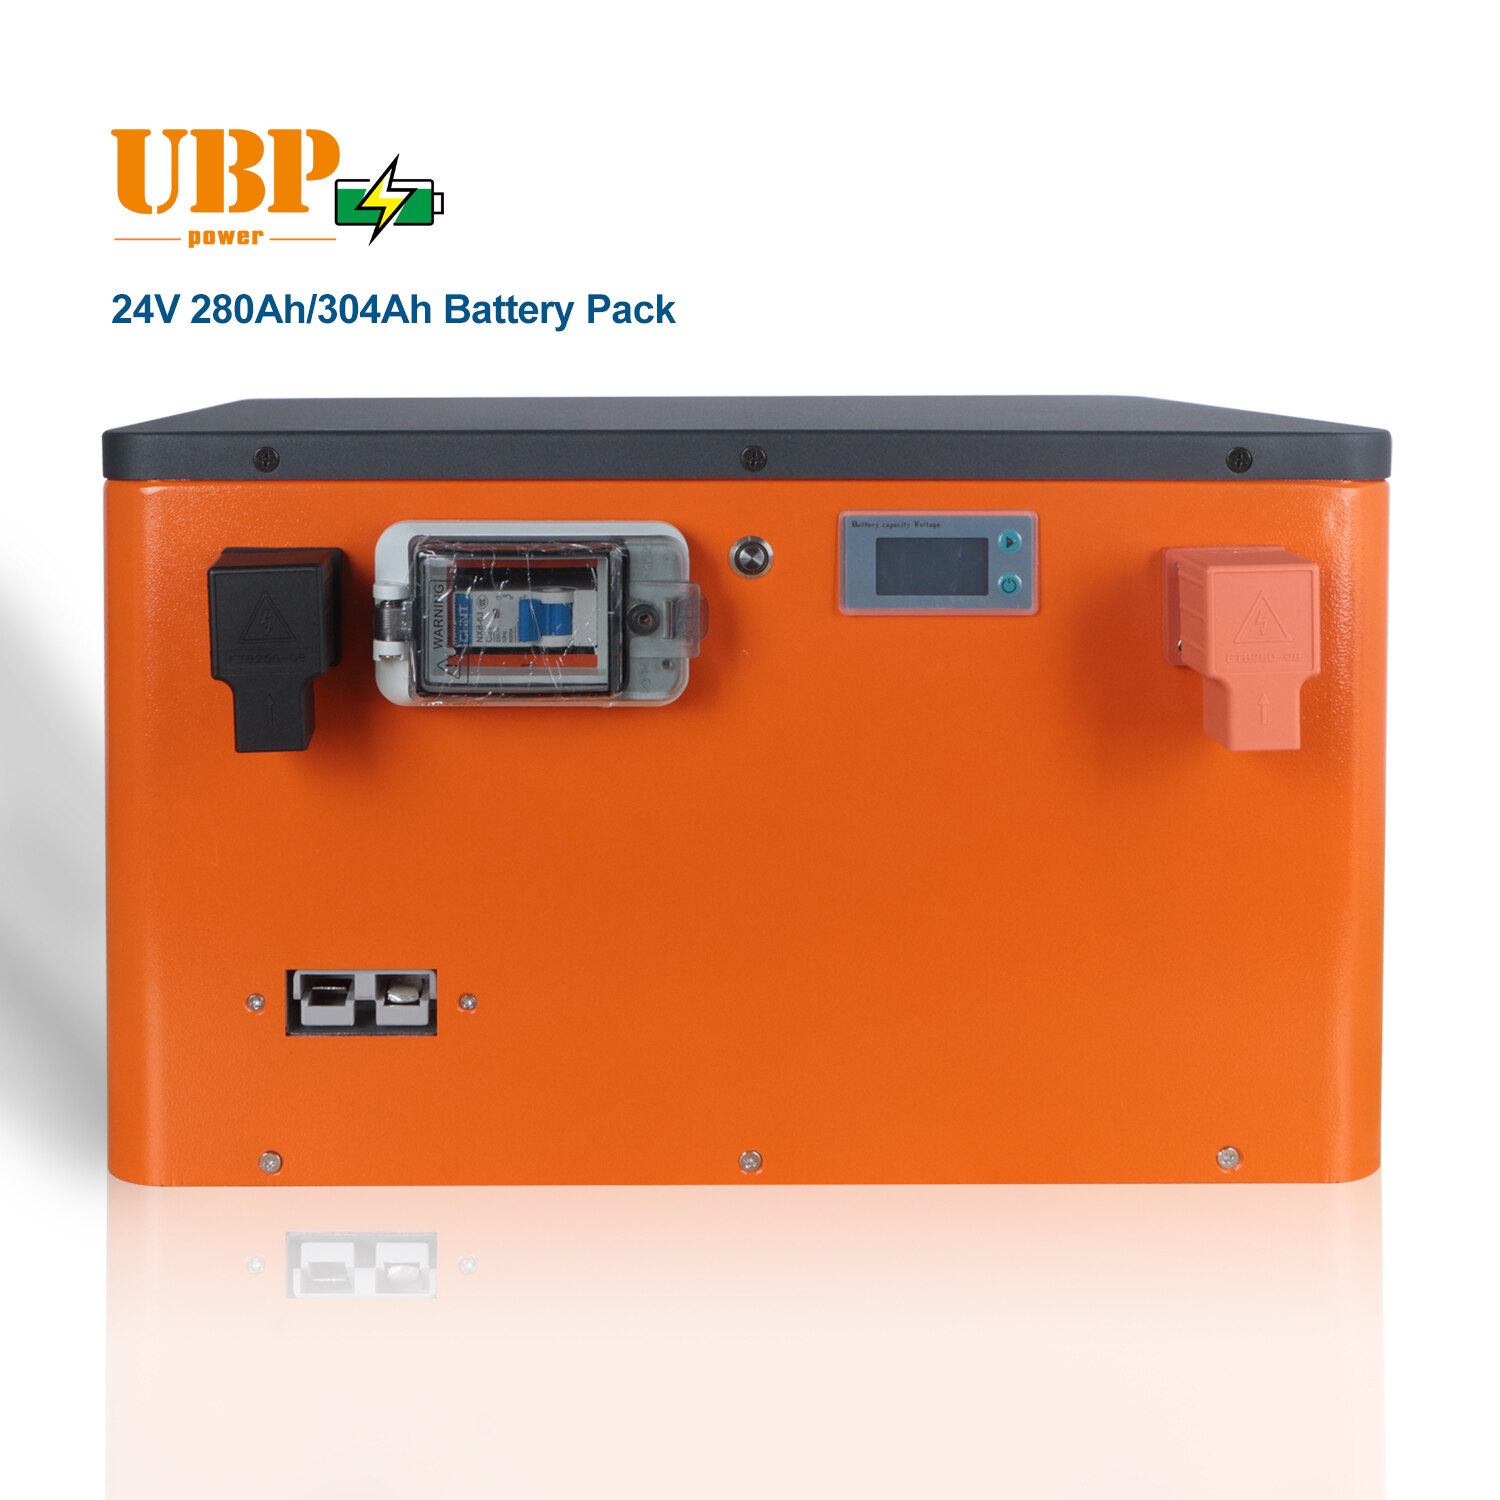 lifepo4 24v pack;lifepo4 battery pack;battery pack